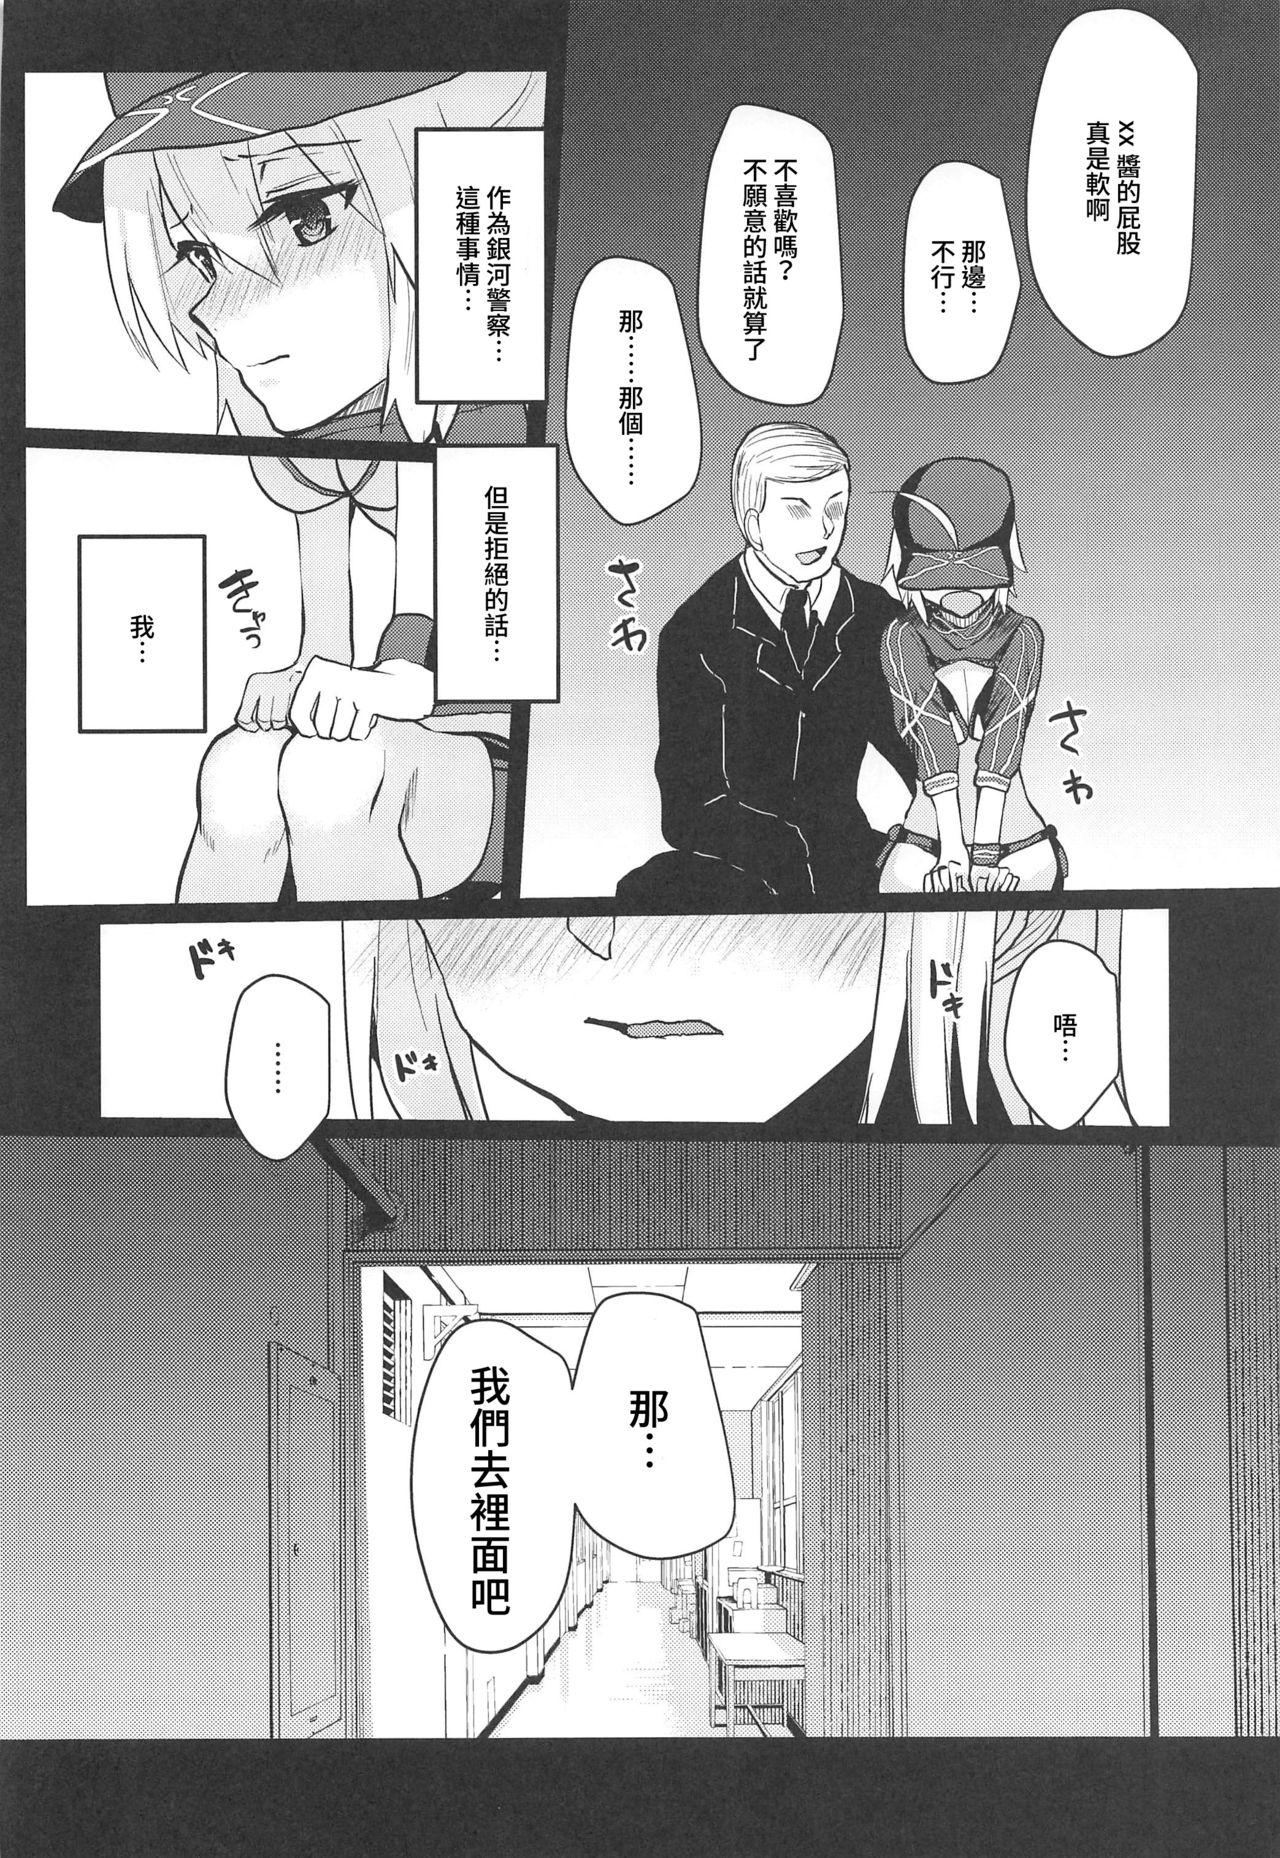 Leche Fusai Mamire no Nazo no Heroine XX no Hon - Fate grand order Exgf - Page 6